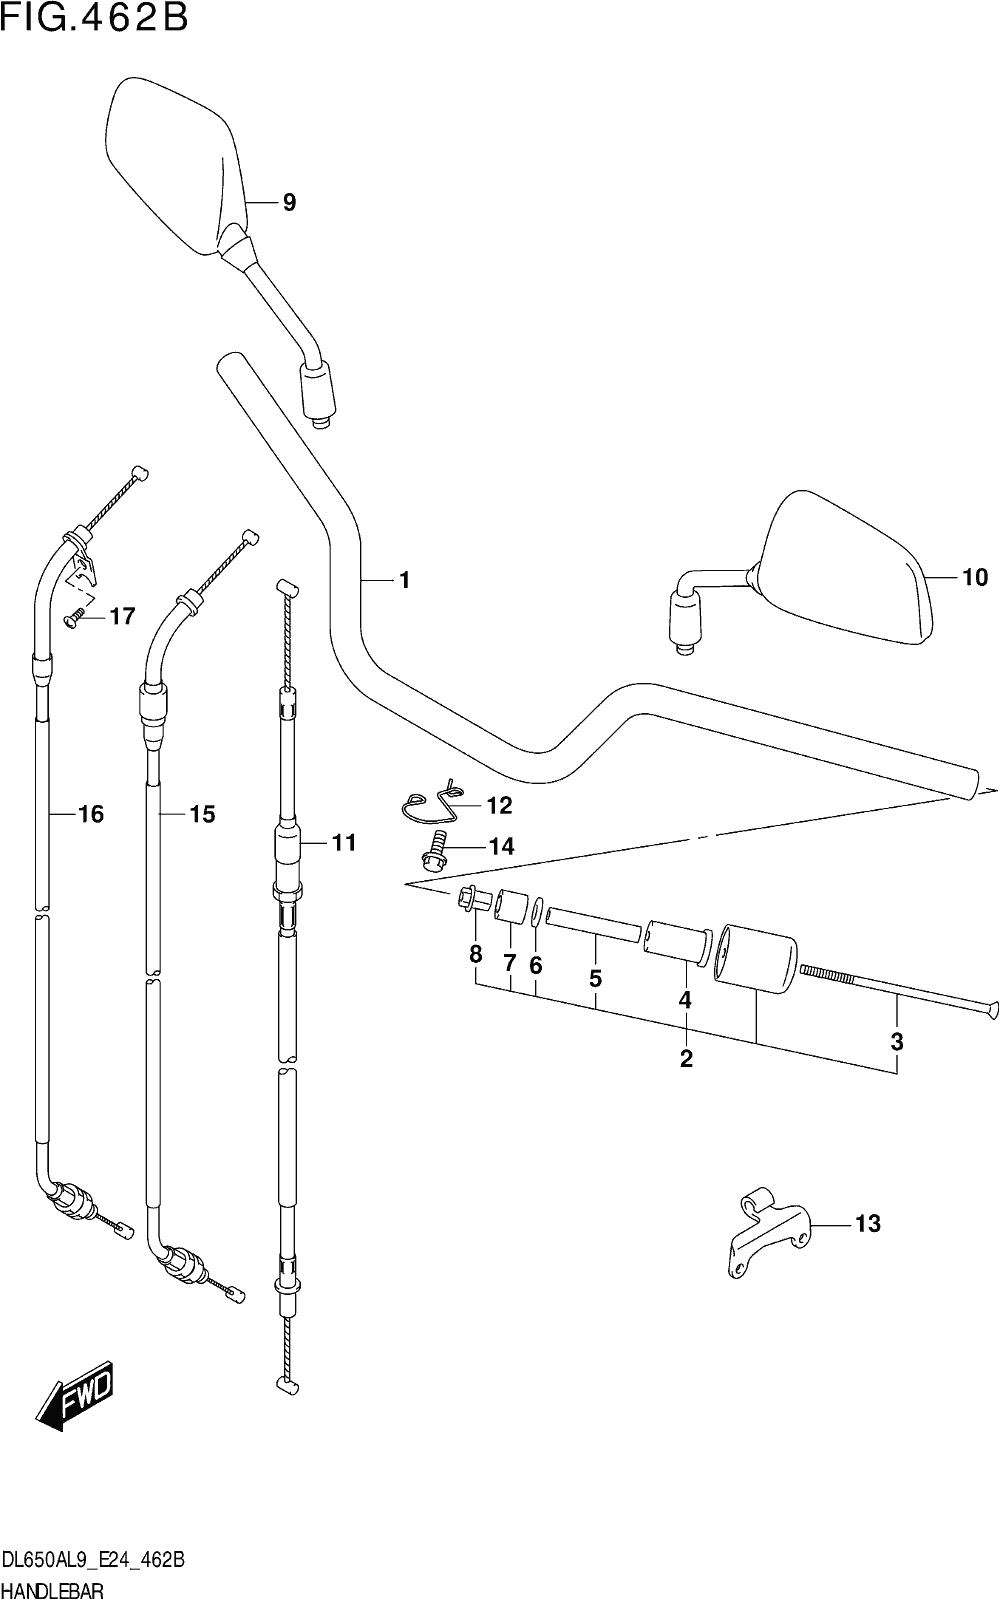 Fig.462b Handlebar (dl650a,dl650aue)